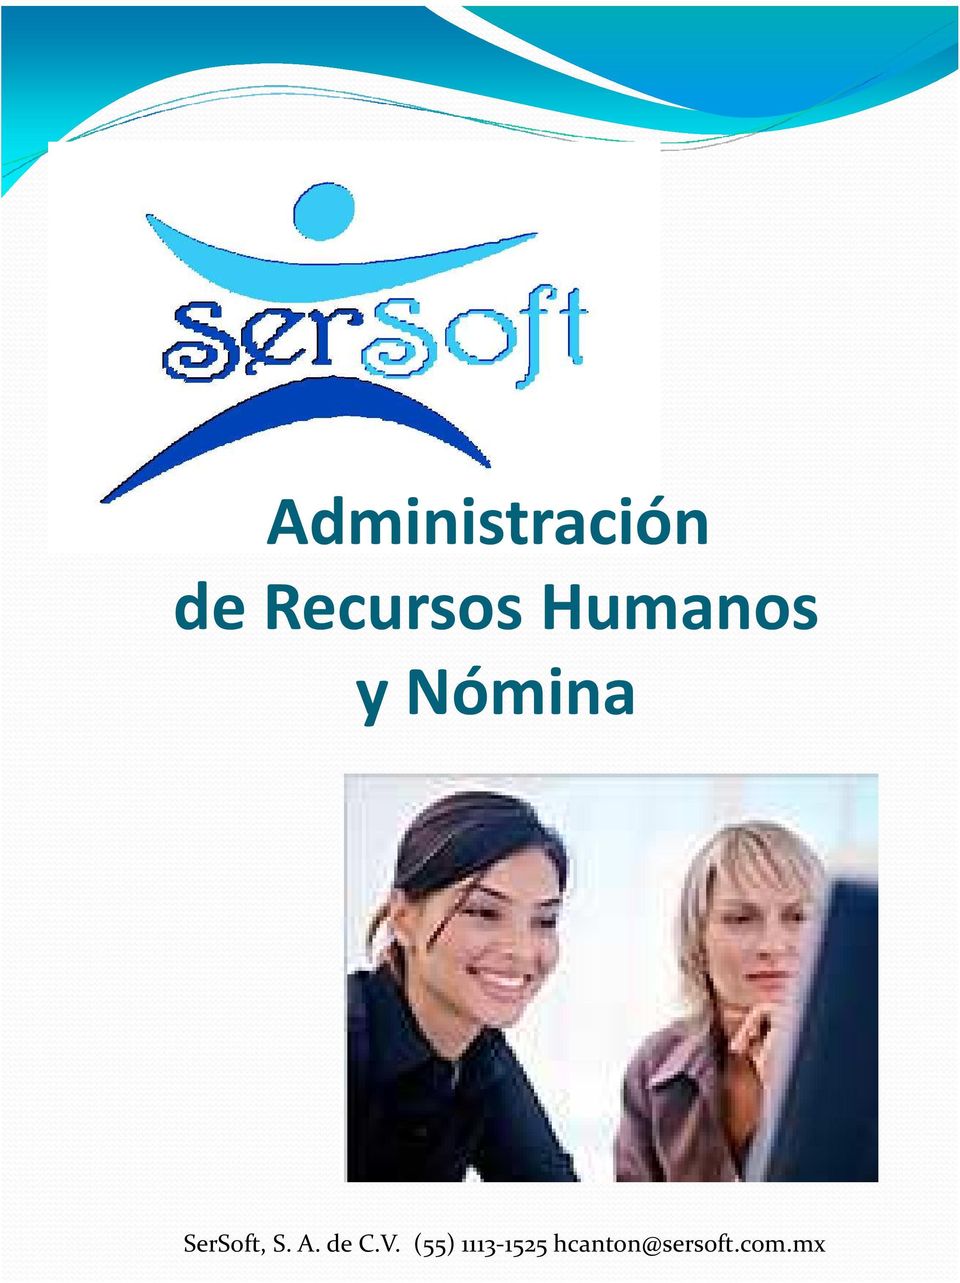 SerSoft, S. A. de C.V.